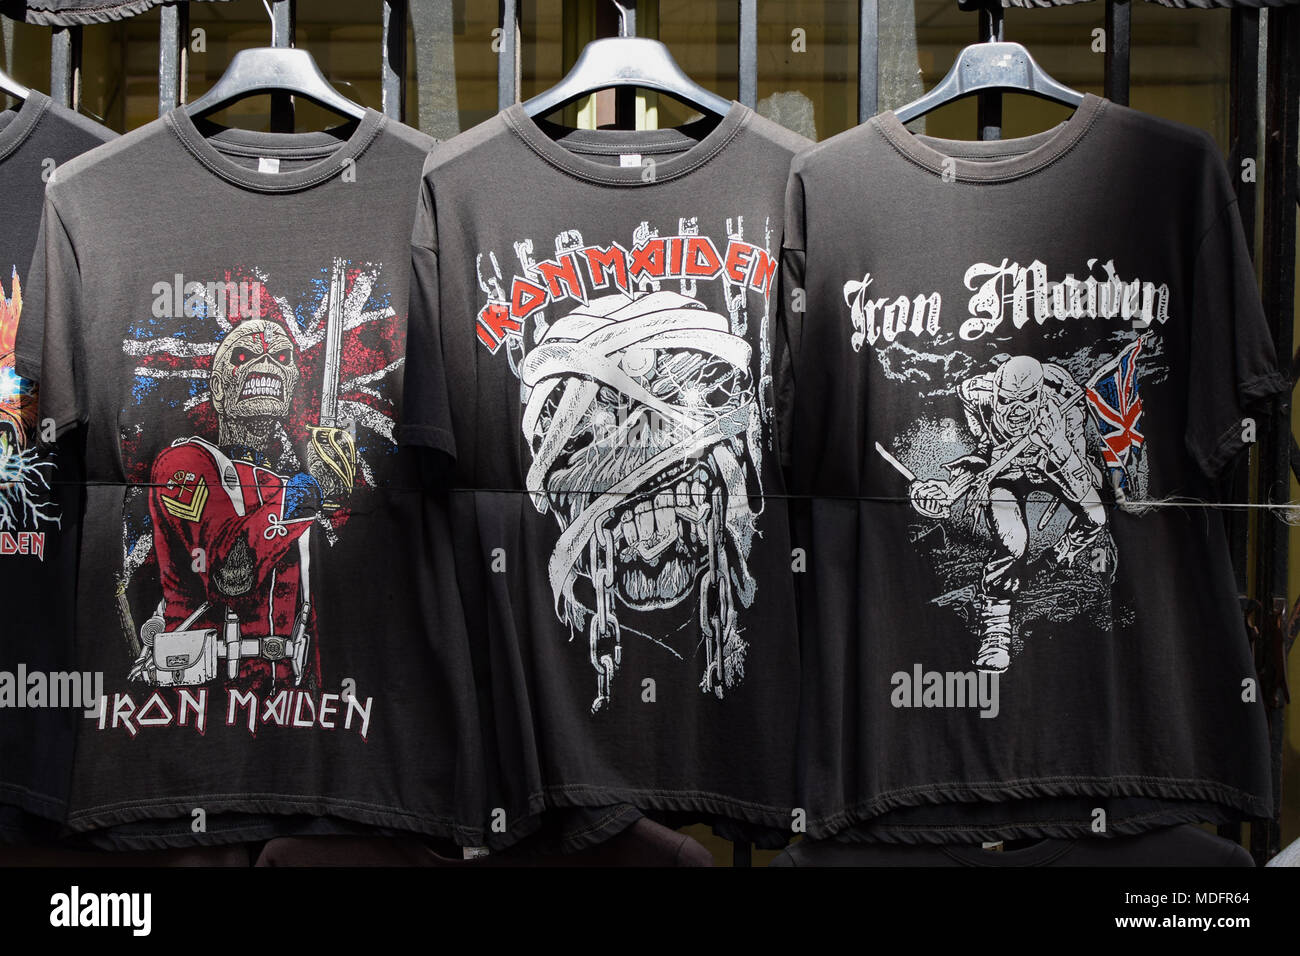 Athènes, Grèce - avril 1, 2018 : T-shirts imprimés avec des dessins et modèles industriels par le groupe de heavy metal Iron Maiden. Souvenirs de musique rock vintage à vendre. Banque D'Images